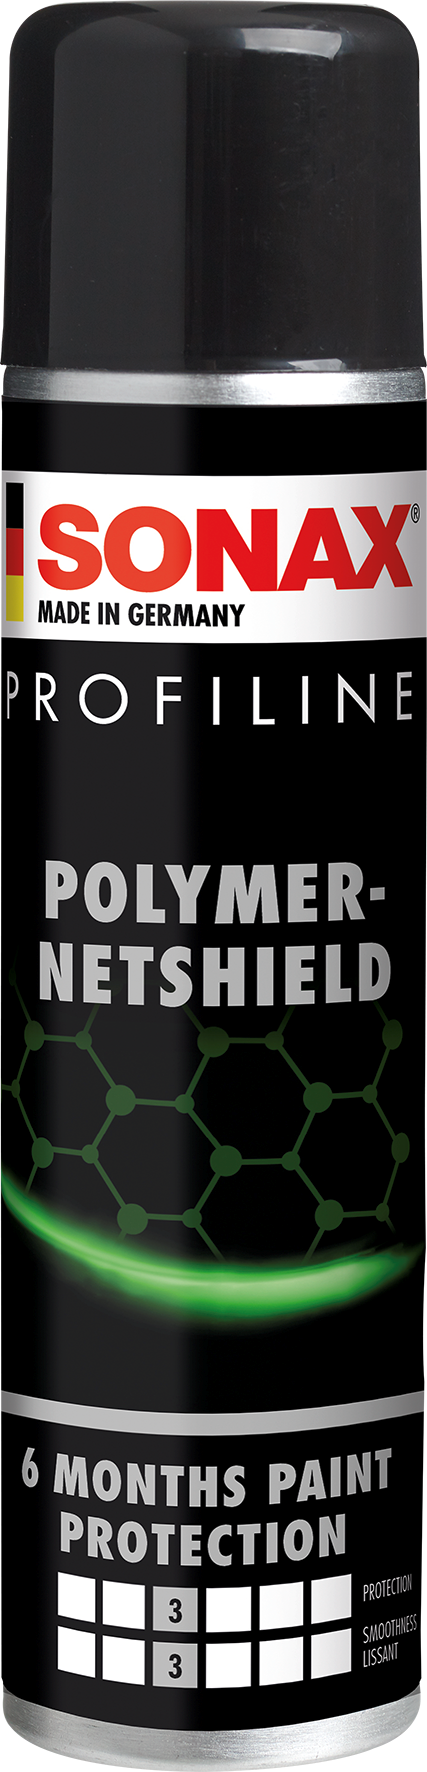 PROFILINE Polymer Netshield- PROFFILINE Bảo Vệ Mặt Sơn Dạng Lưới Lai Polymer 